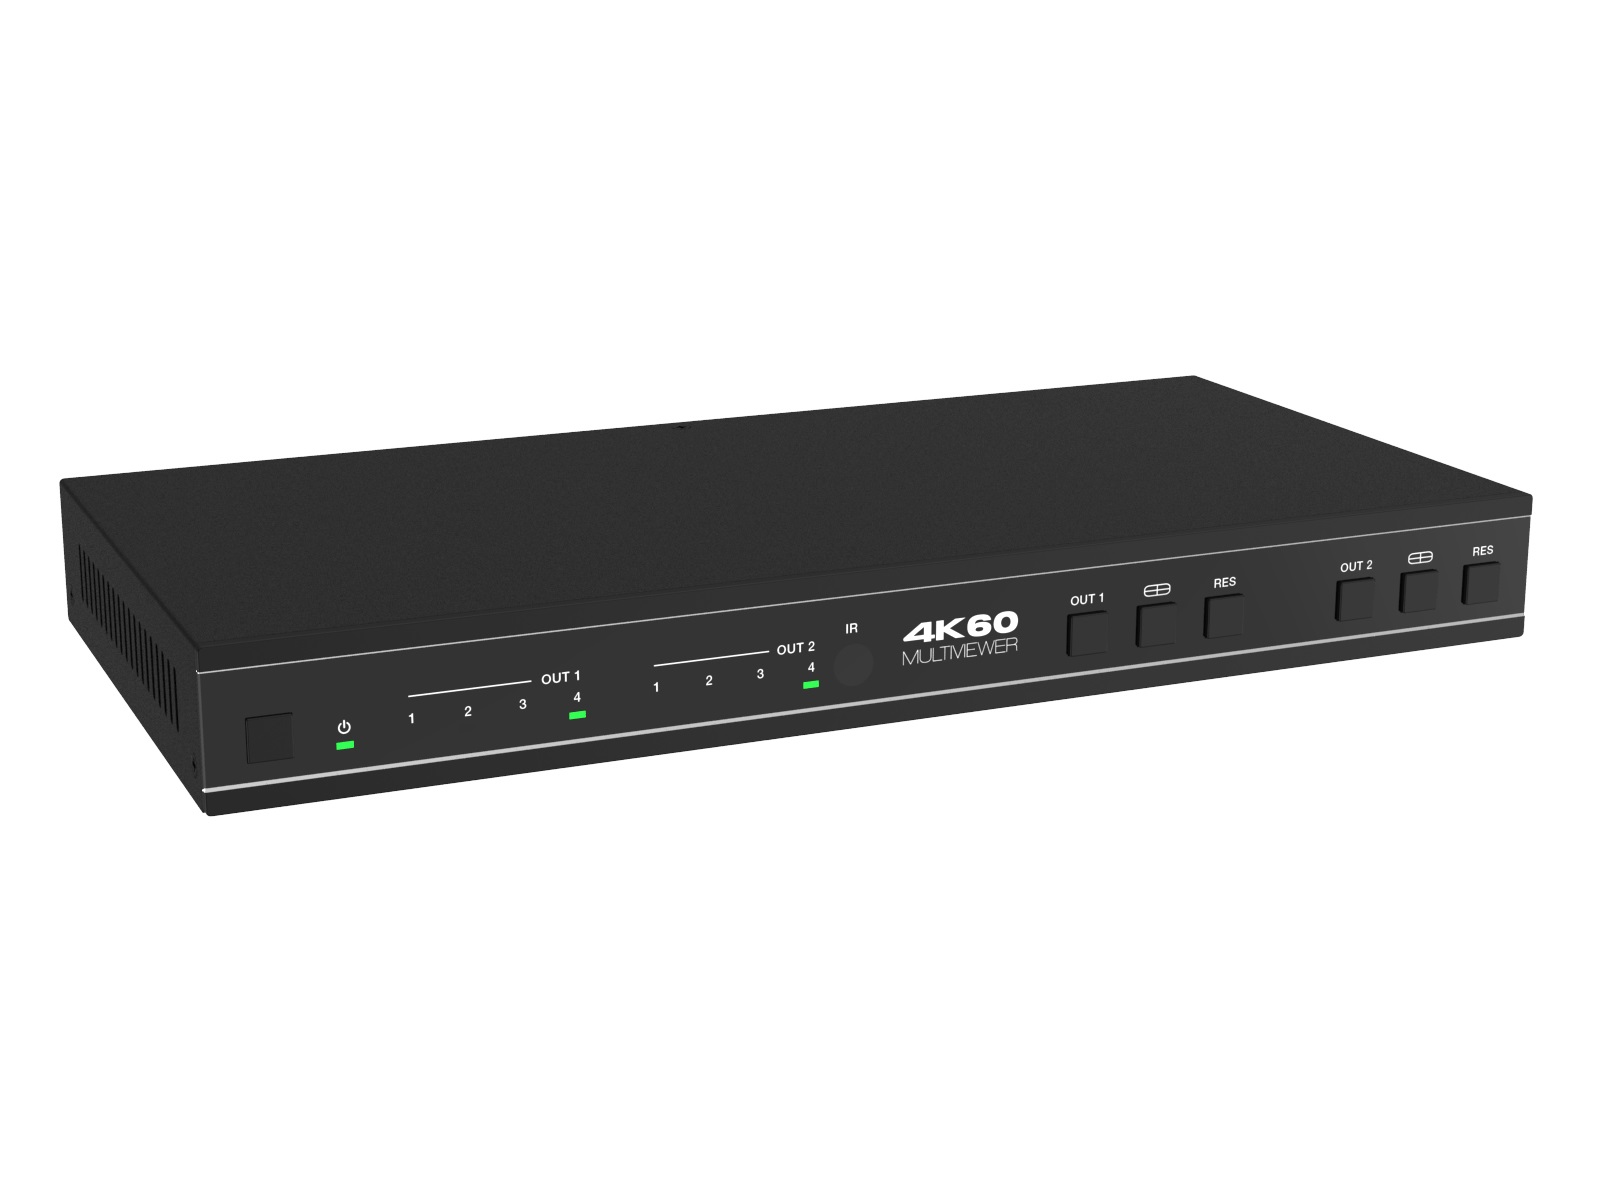 A-NeuVideo ANI-PIP-42UHD 4x2 4K60 UHD Multiviewer Seamless Video Matrix Switcher